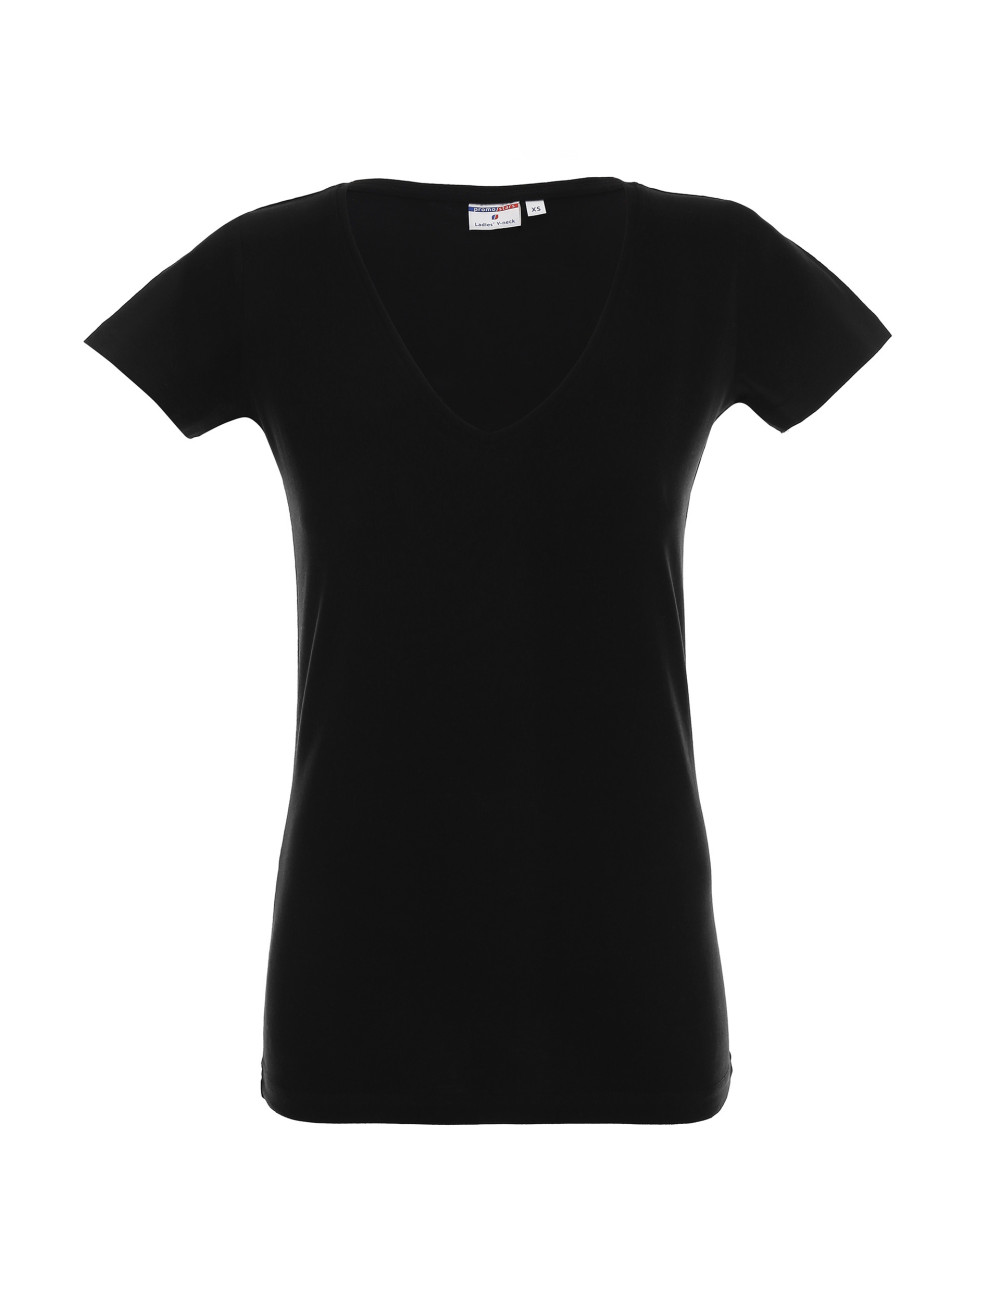 Damen-T-Shirt mit V-Ausschnitt in Schwarz von Promostars